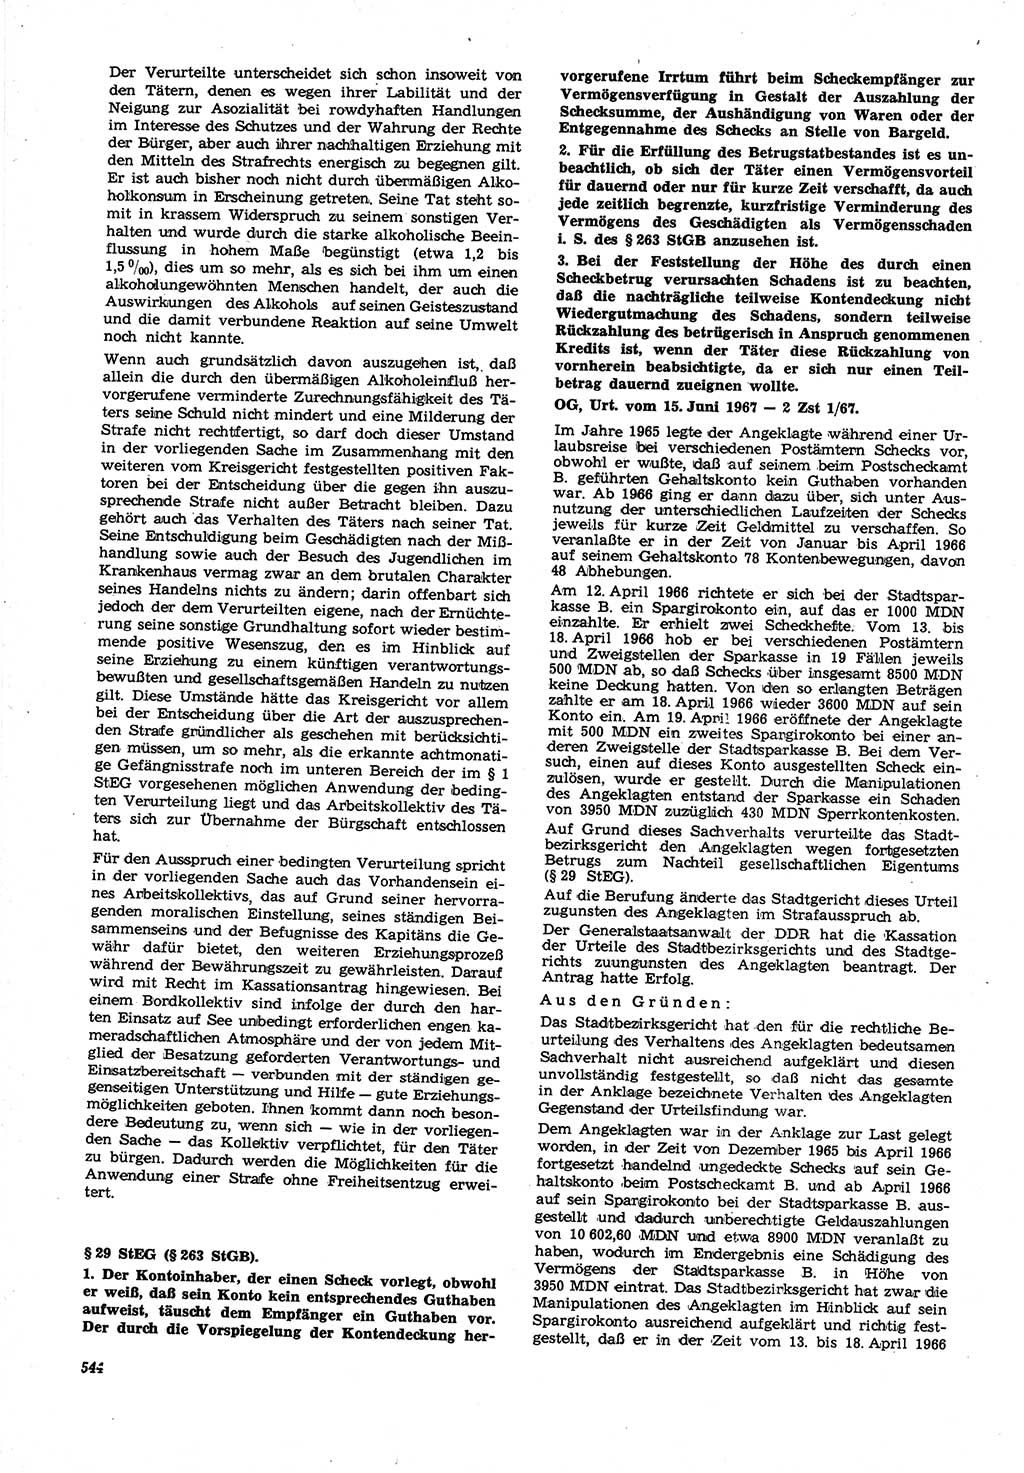 Neue Justiz (NJ), Zeitschrift für Recht und Rechtswissenschaft [Deutsche Demokratische Republik (DDR)], 21. Jahrgang 1967, Seite 544 (NJ DDR 1967, S. 544)